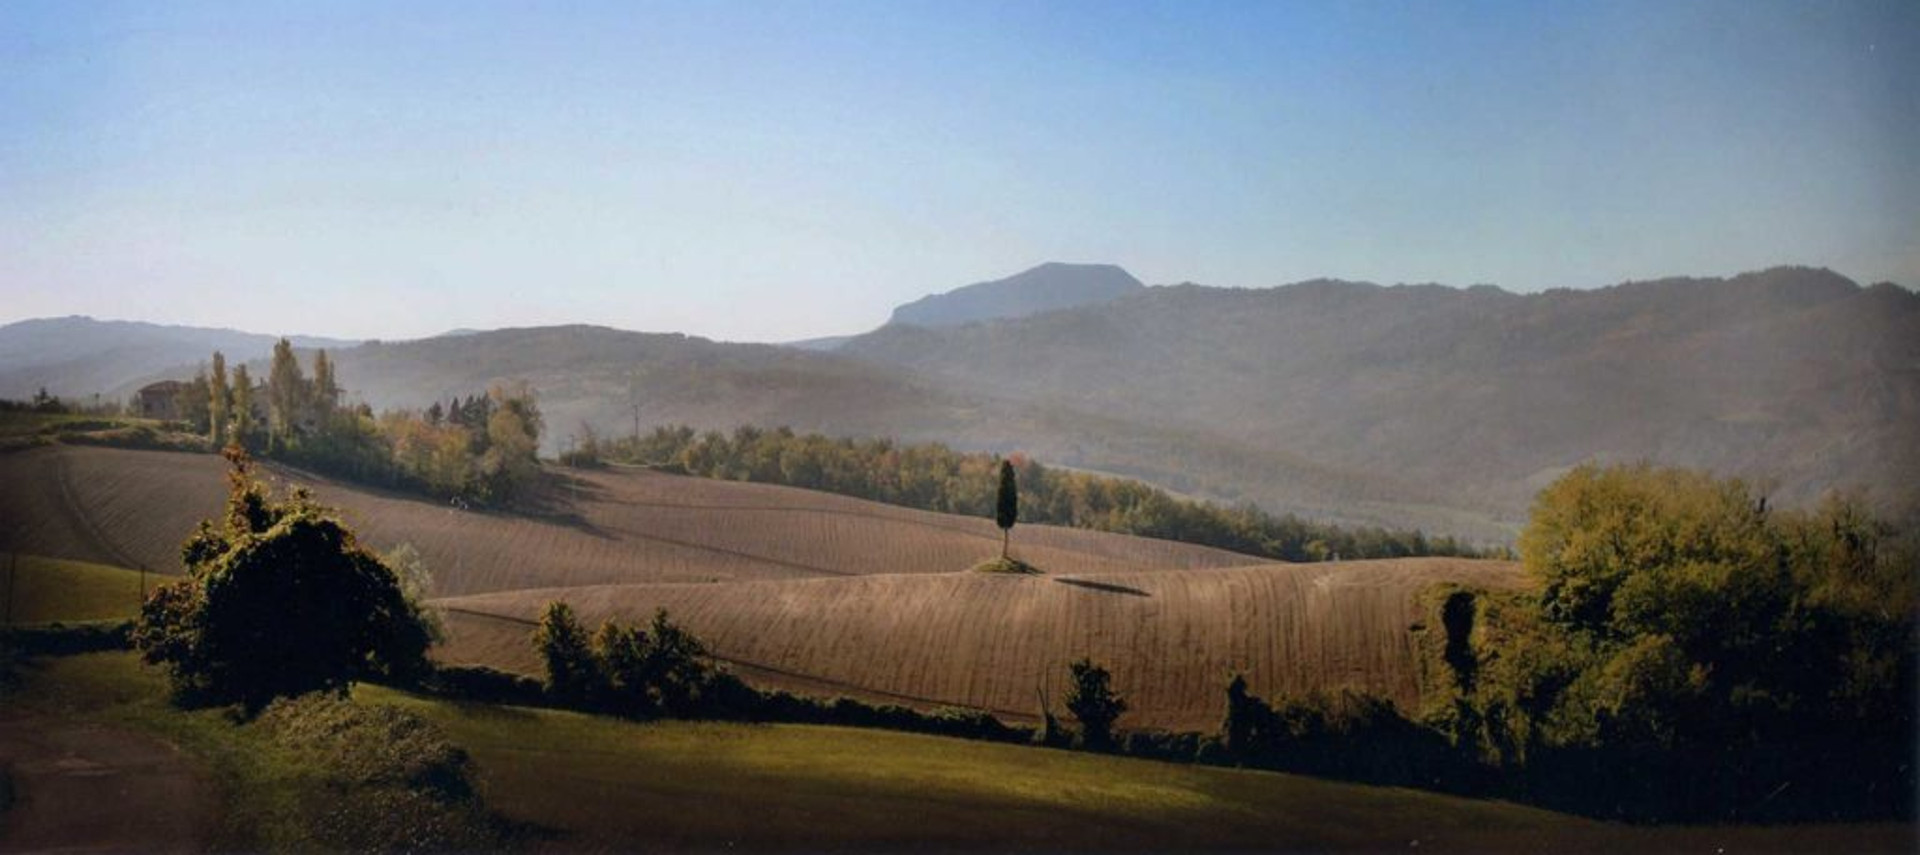 Premio Giuria: Borgo di montorio - Antonio Crema, dal sito IT.A.CA